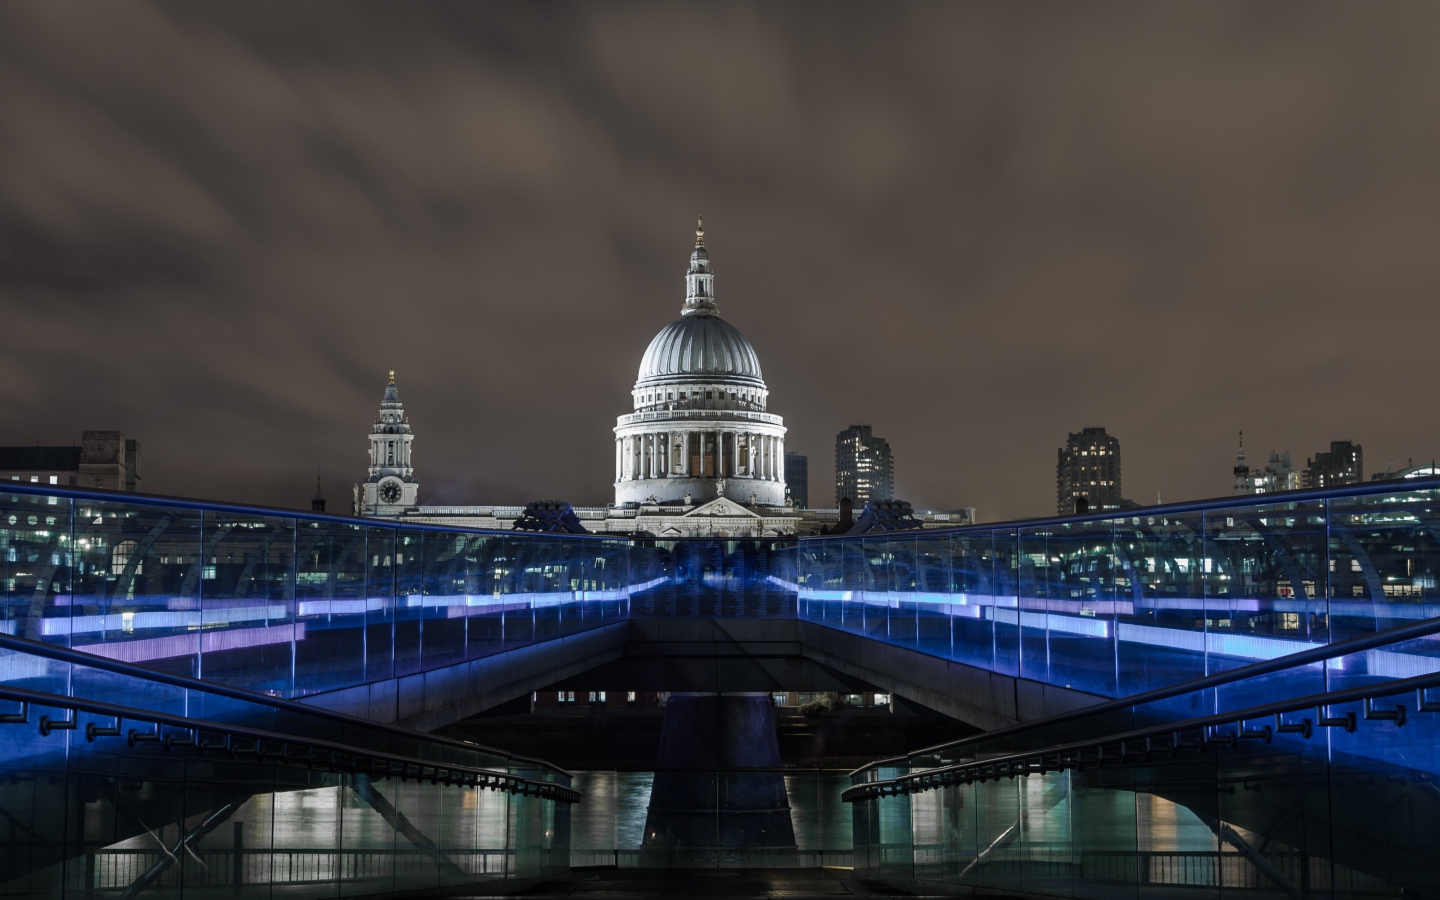 Мост Миллениум с подсветкой, Лондон. Англия 